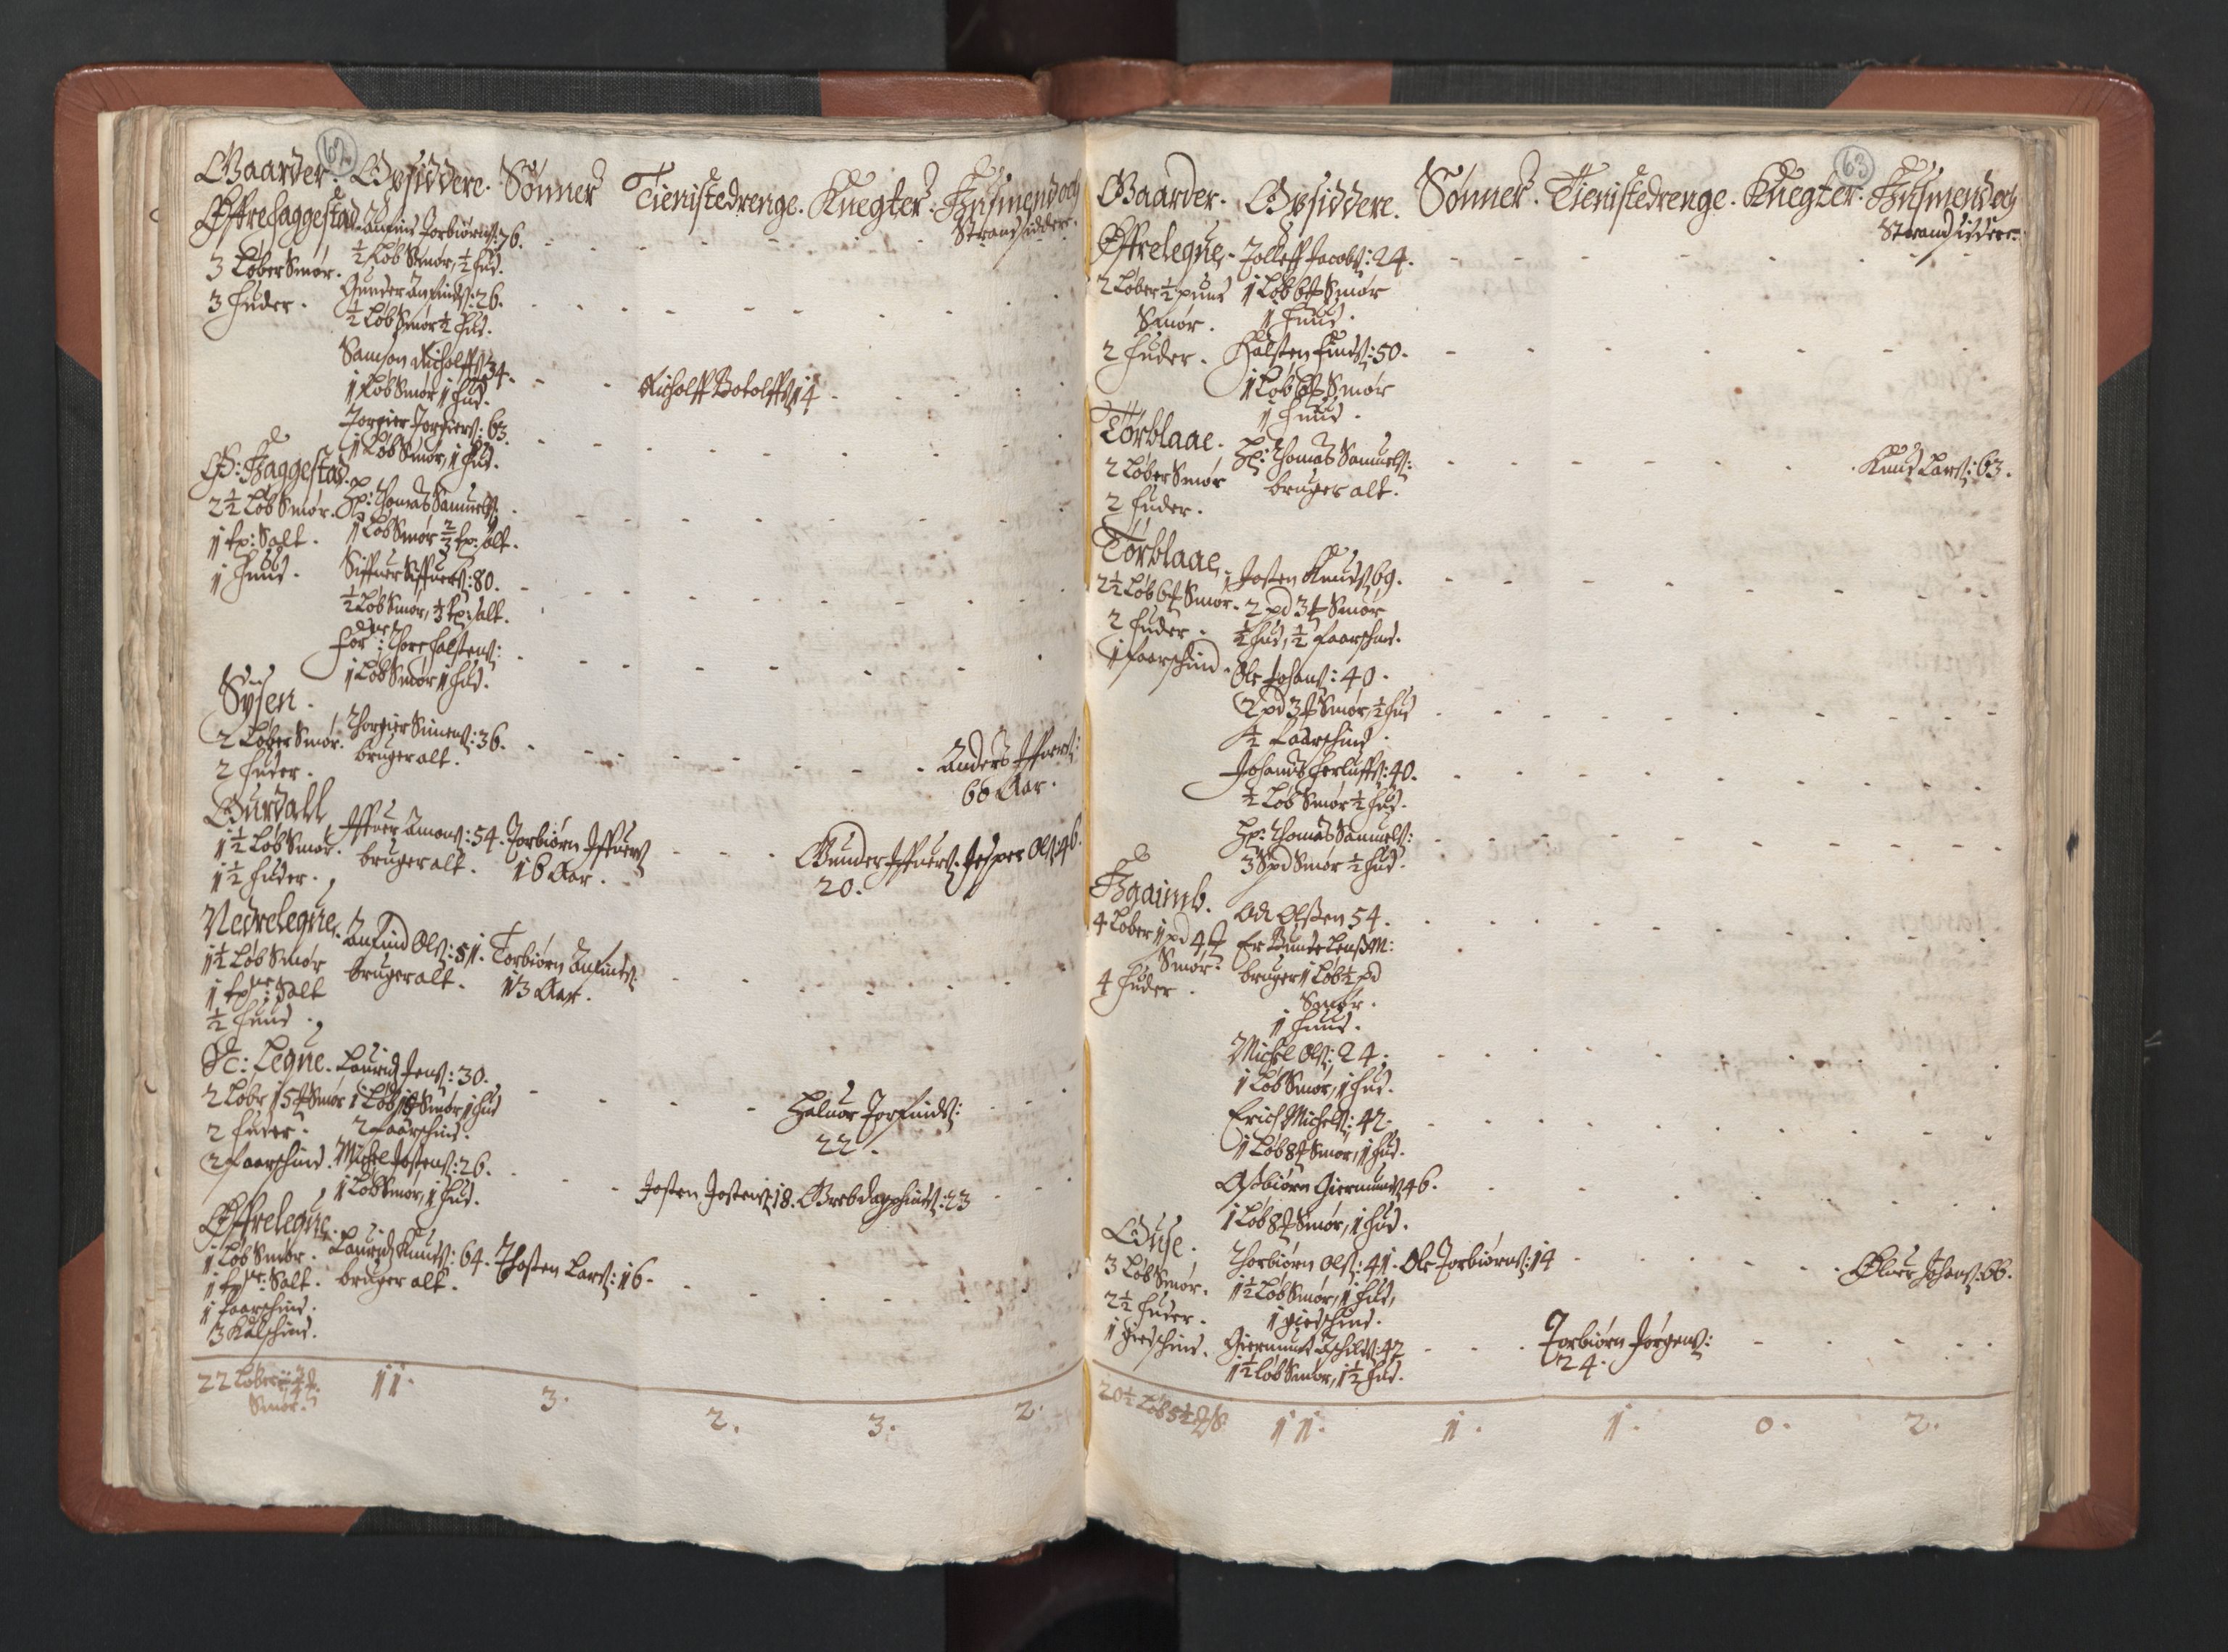 RA, Bailiff's Census 1664-1666, no. 14: Hardanger len, Ytre Sogn fogderi and Indre Sogn fogderi, 1664-1665, p. 62-63